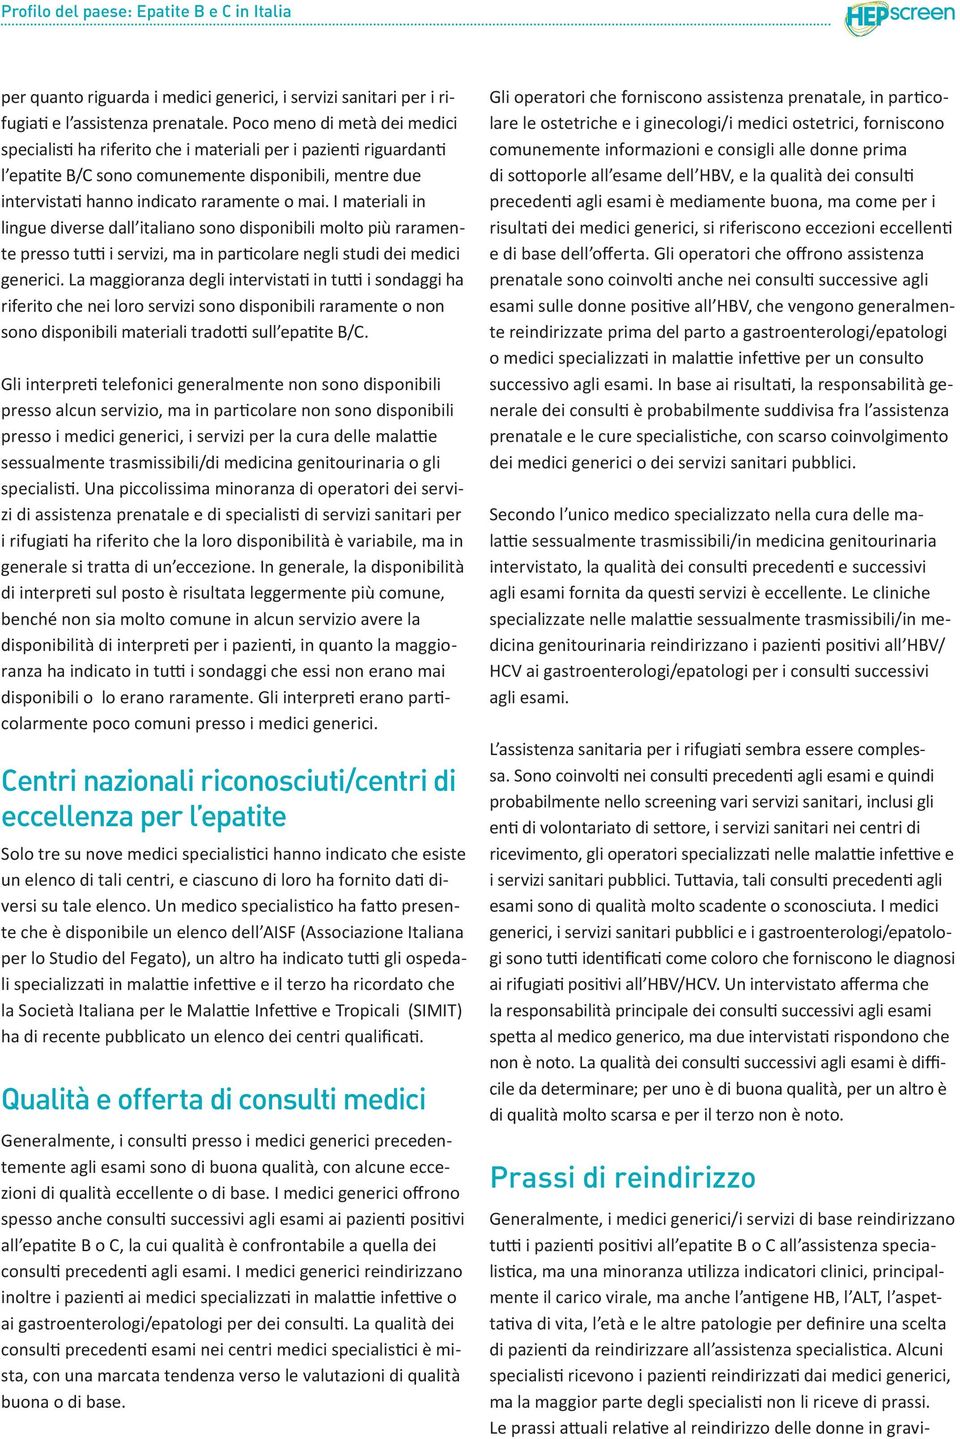 I materiali in lingue diverse dall italiano sono disponibili molto più raramente presso tutti i servizi, ma in particolare negli studi dei medici generici.